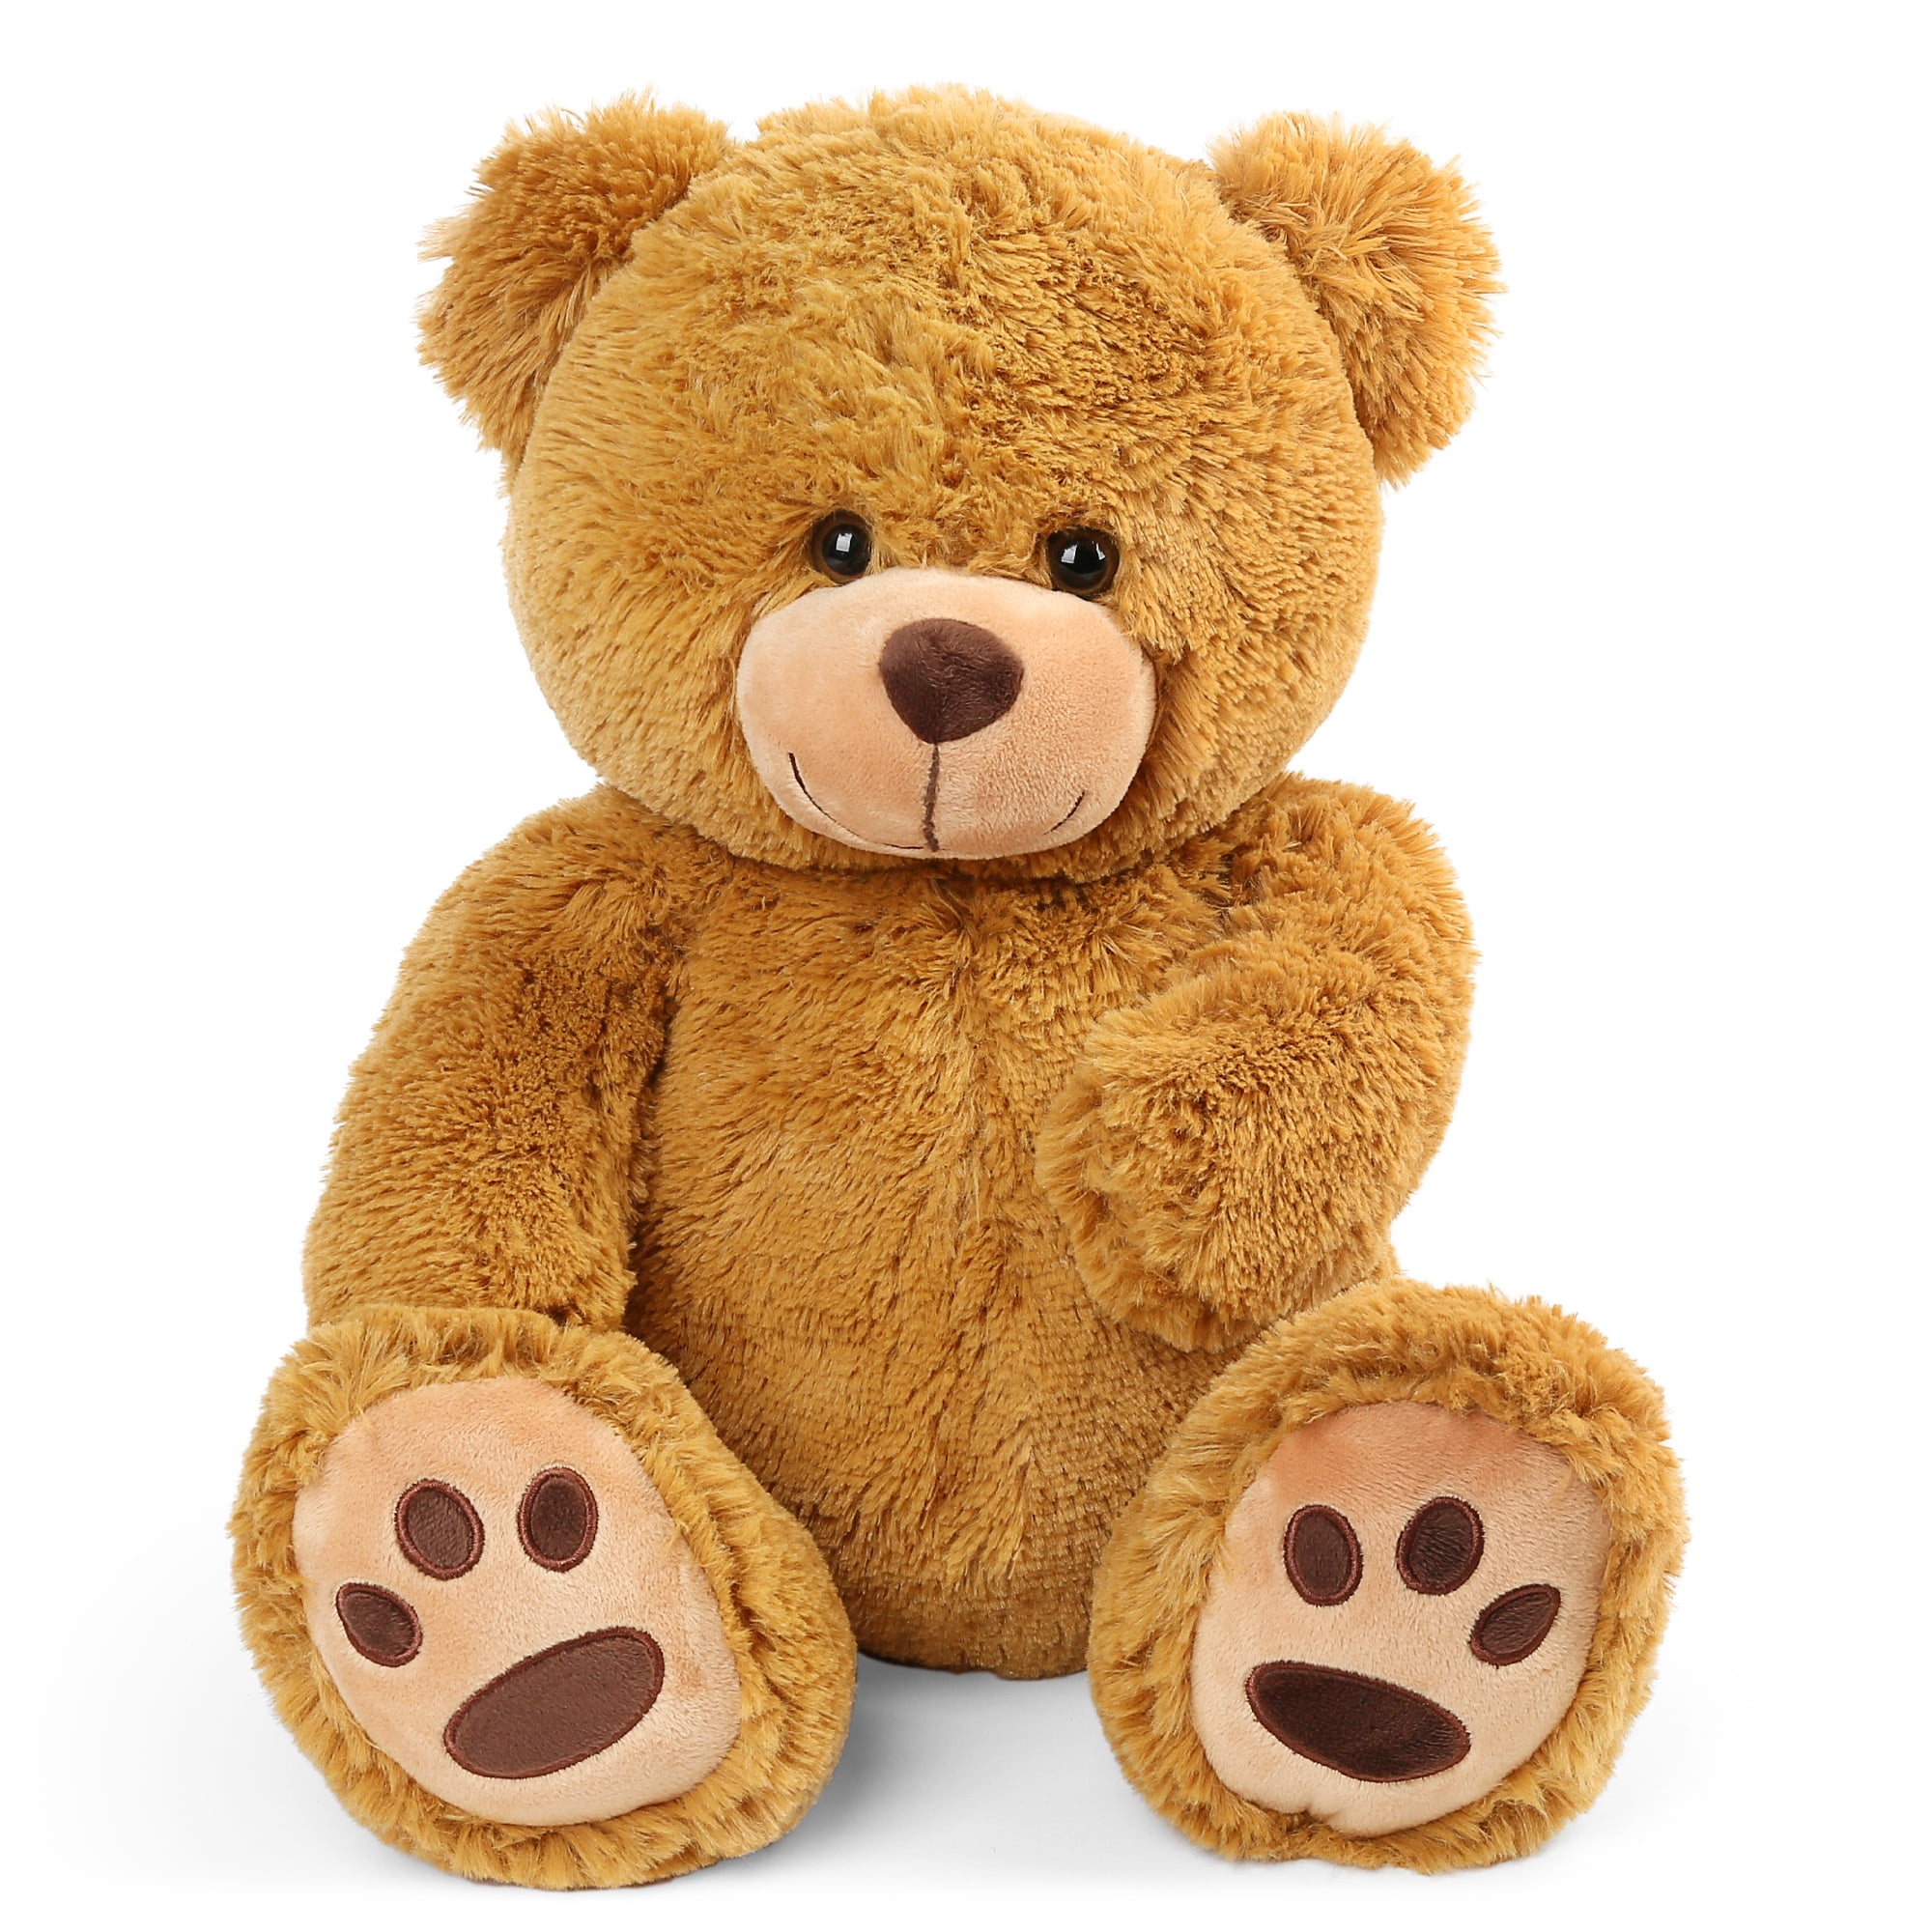 aparna's collection sandal teddy bear 75cm stuffed toy soft plush for kids  love girl - 75 cm - sandal teddy bear 75cm stuffed toy soft plush for kids  love girl . Buy